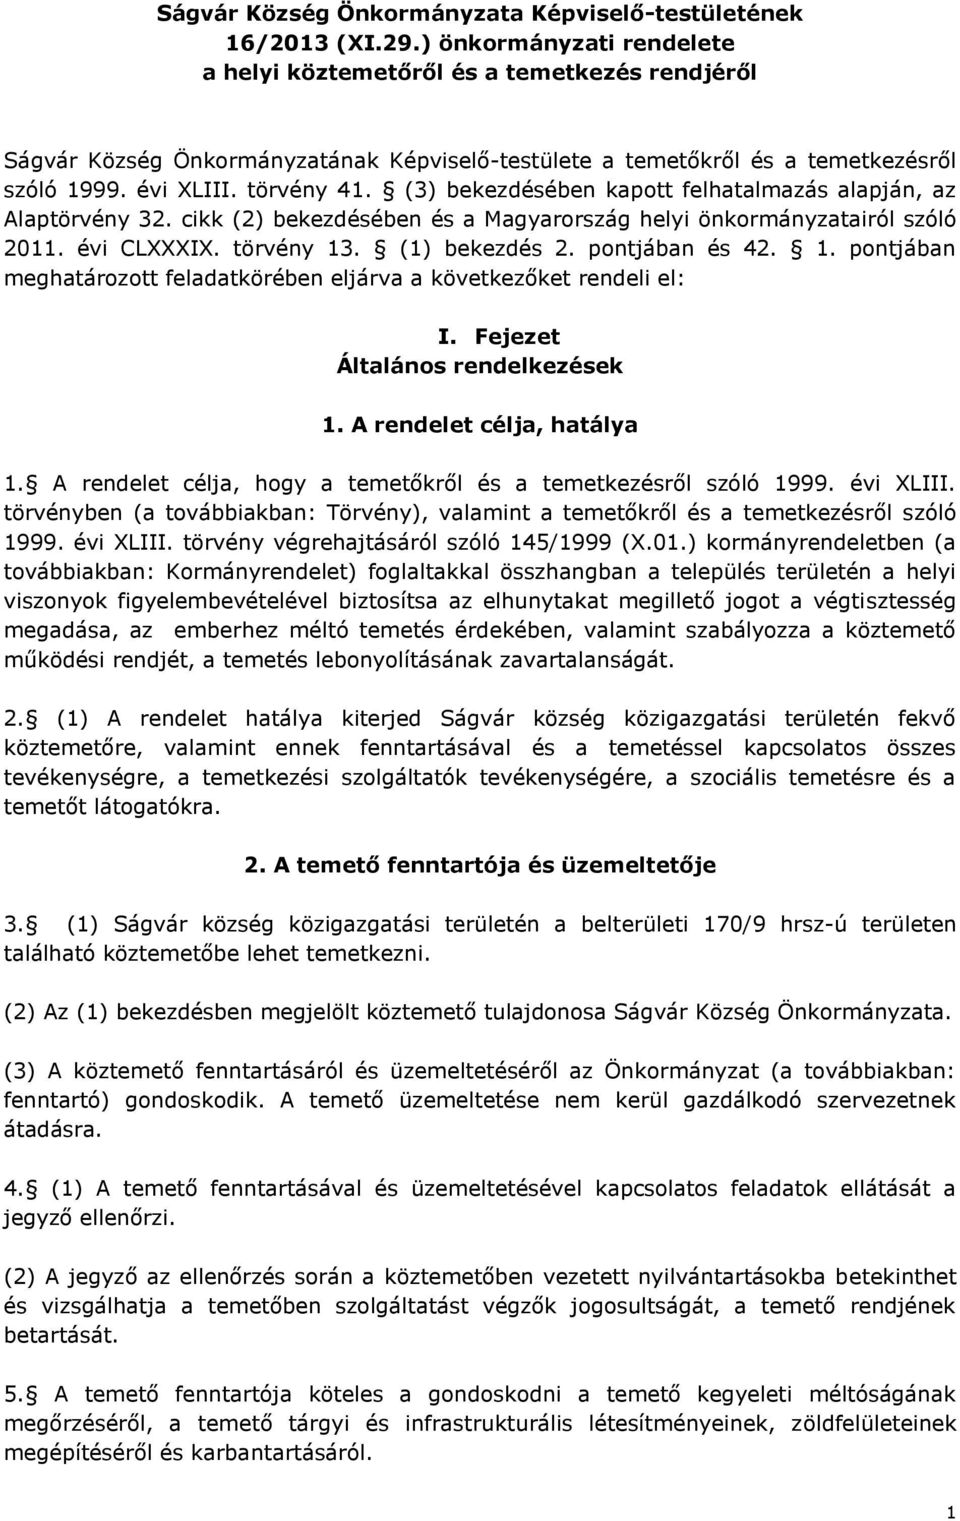 (3) bekezdésében kapott felhatalmazás alapján, az Alaptörvény 32. cikk (2) bekezdésében és a Magyarország helyi önkormányzatairól szóló 2011. évi CLXXXIX. törvény 13. (1) bekezdés 2. pontjában és 42.